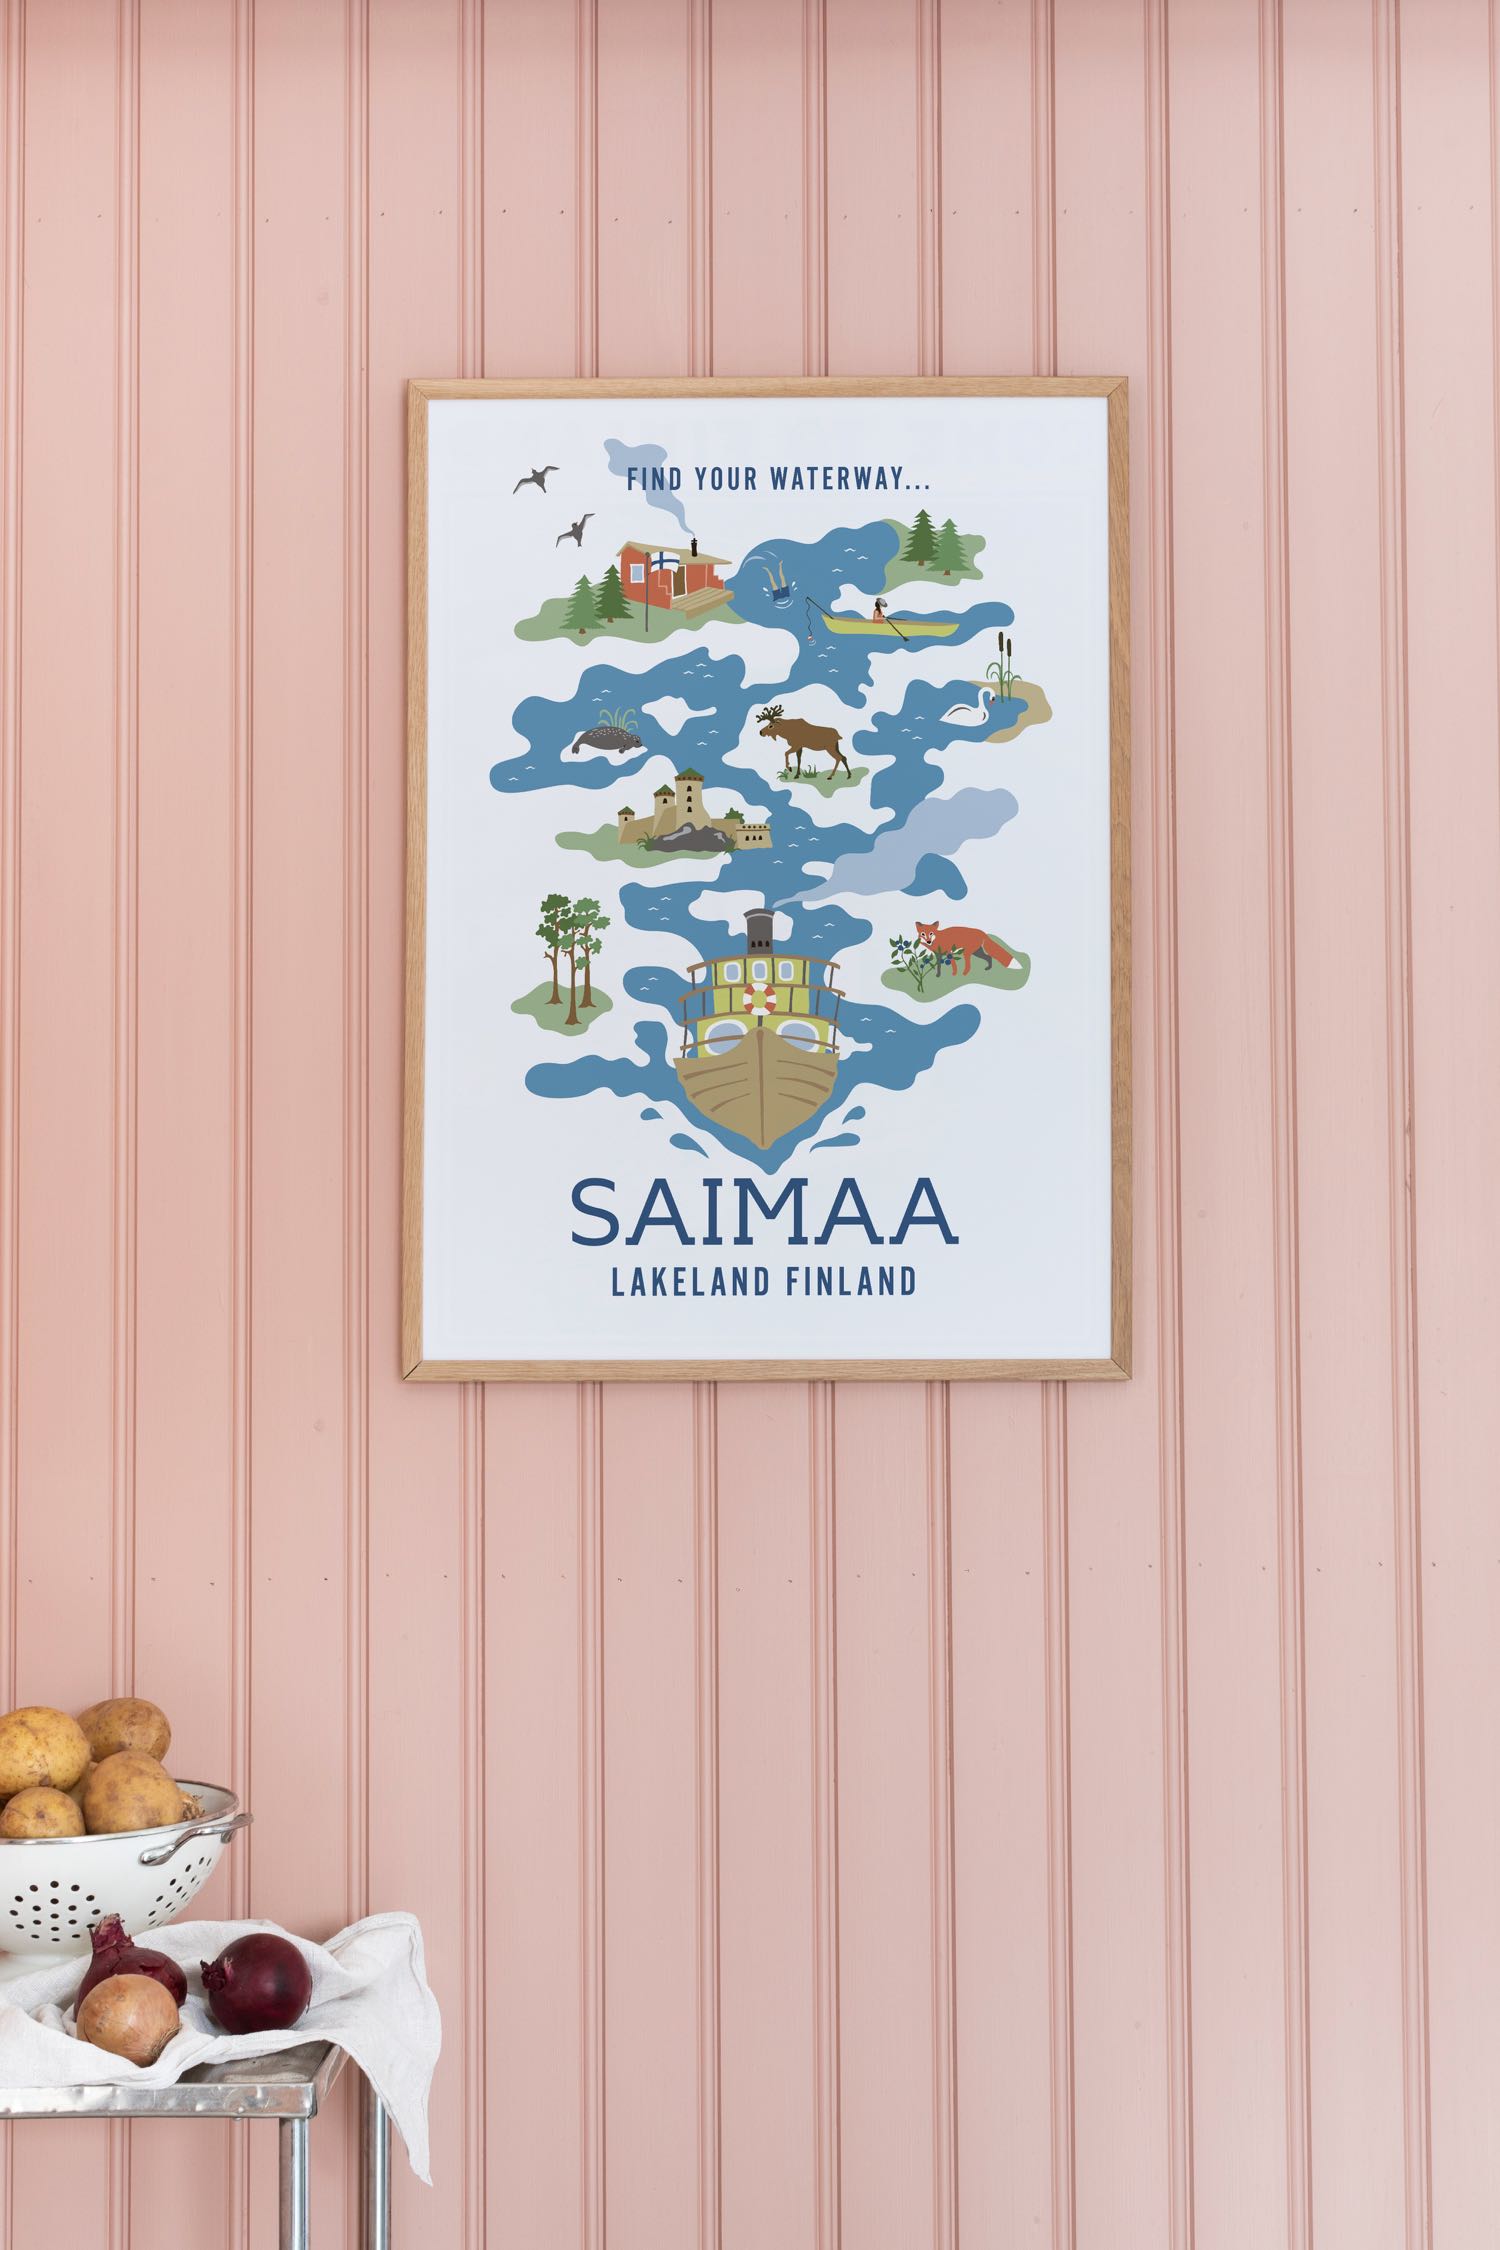 Sisustuskuva suomalaisesta matkajulisteesta nimeltään “Find your waterway by Henna Gaus”, koko 50x70 cm.